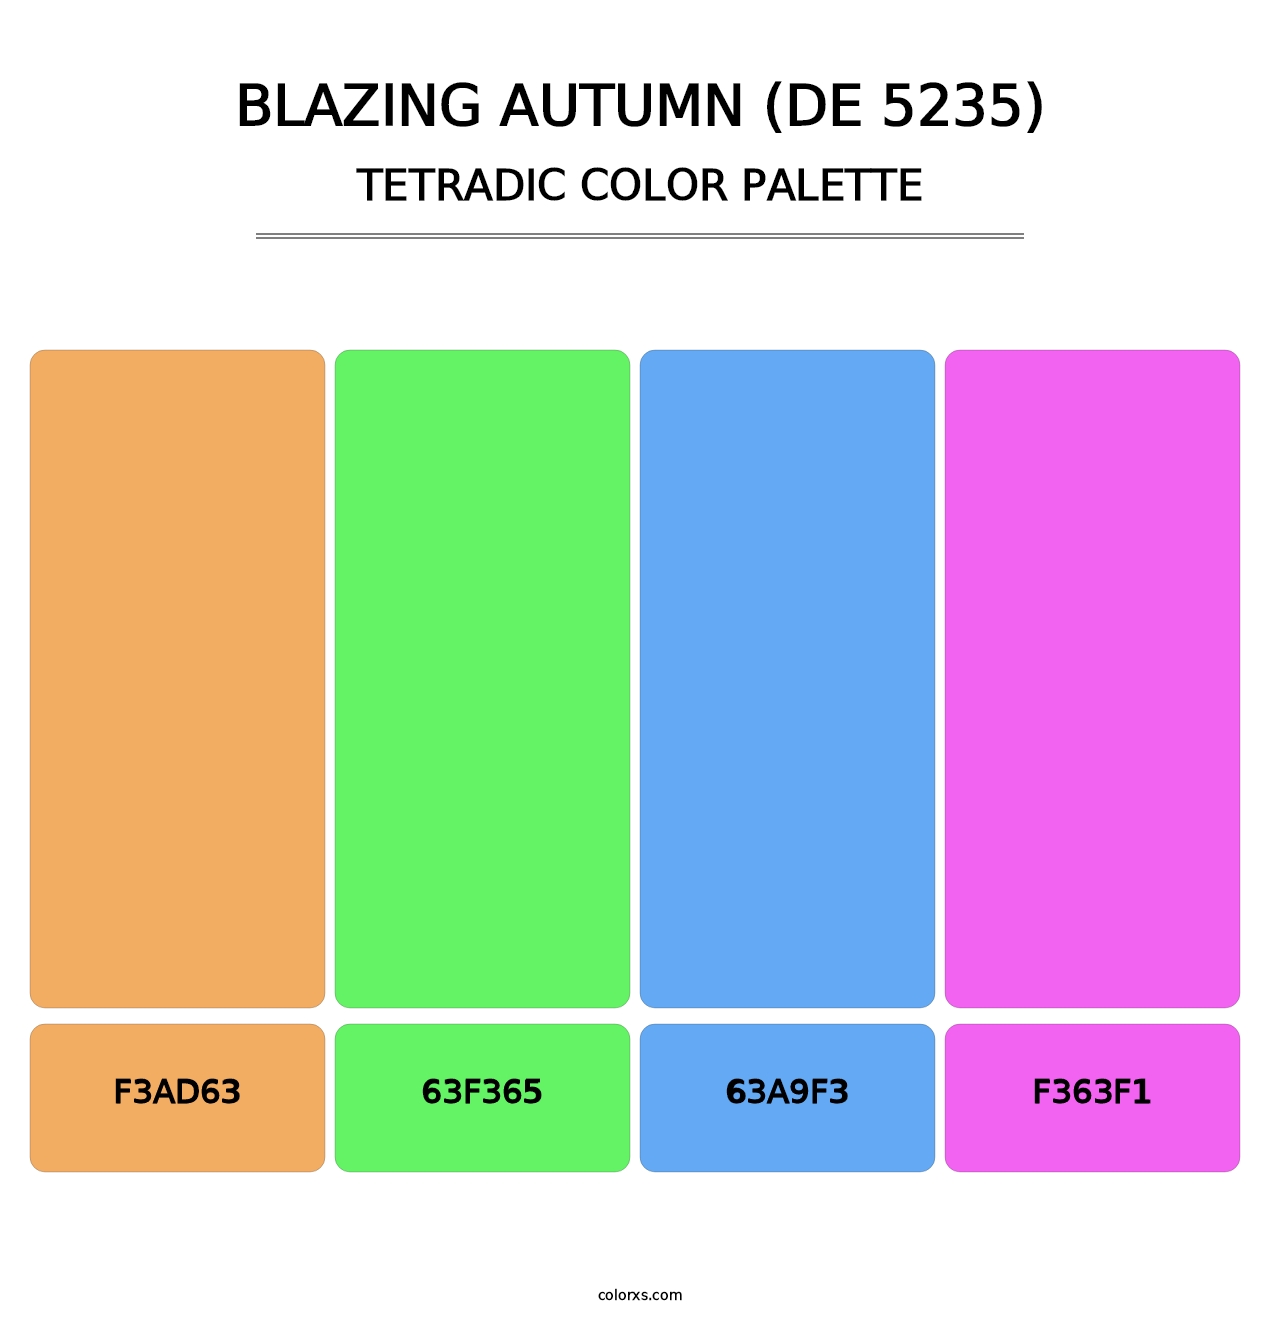 Blazing Autumn (DE 5235) - Tetradic Color Palette